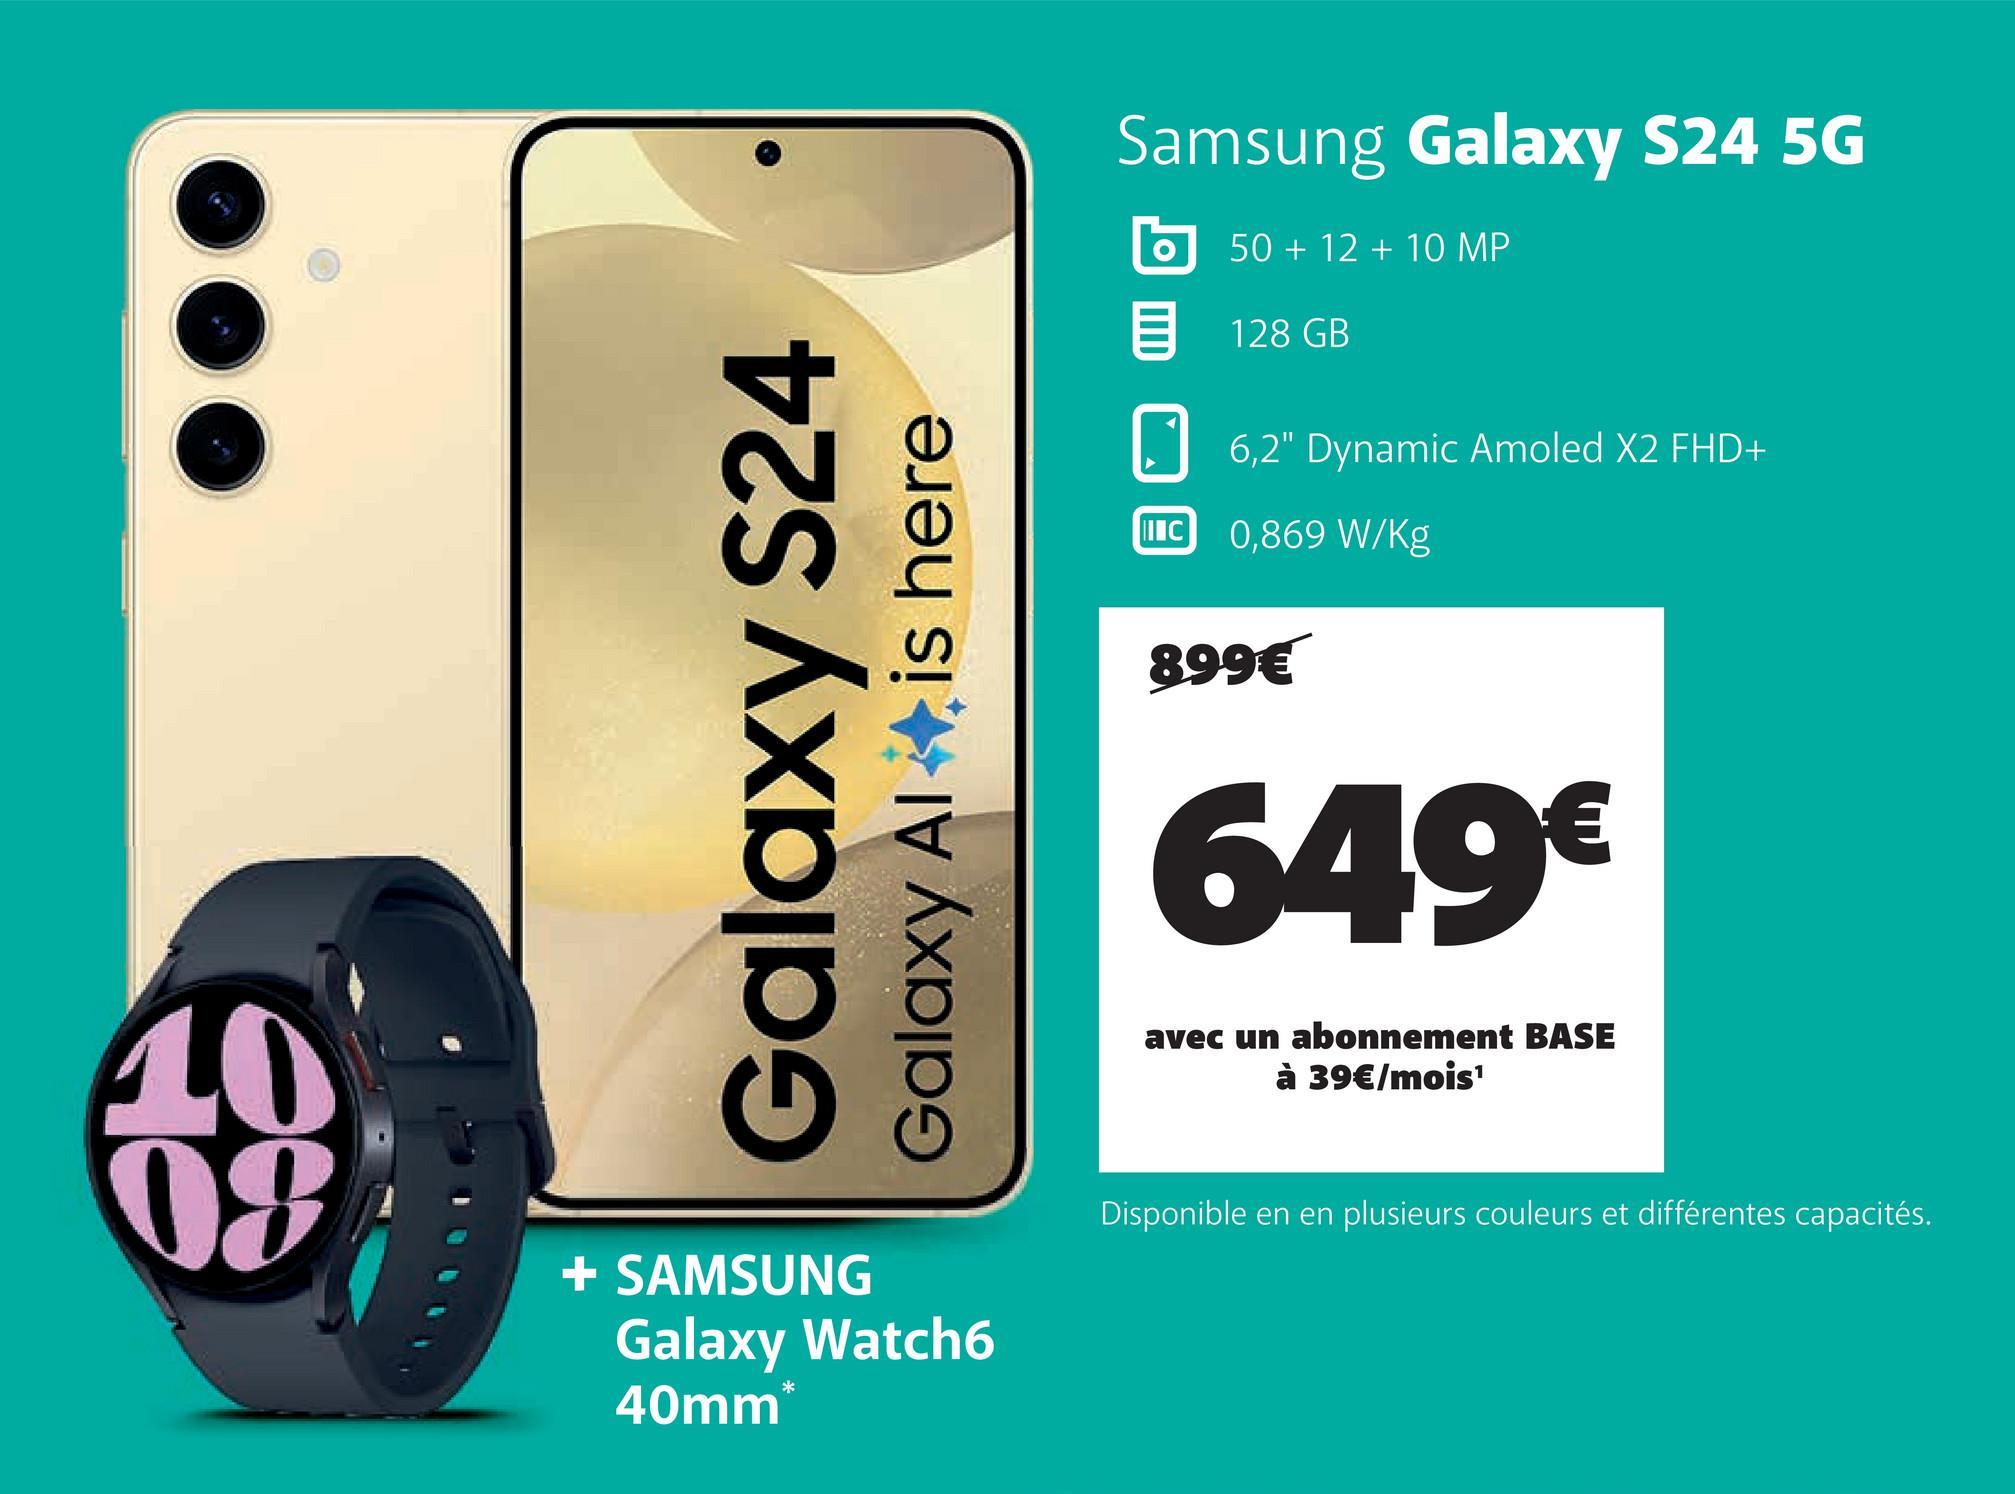 Galaxy S24
Galaxy Al
is here
Samsung Galaxy S24 5G
II C
50+12+10 MP
128 GB
6,2" Dynamic Amoled X2 FHD+
0,869 W/Kg
899€
649€
avec un abonnement BASE
à 39€/mois¹
10
08
+ SAMSUNG
Galaxy Watch6
40mm*
Disponible en en plusieurs couleurs et différentes capacités.